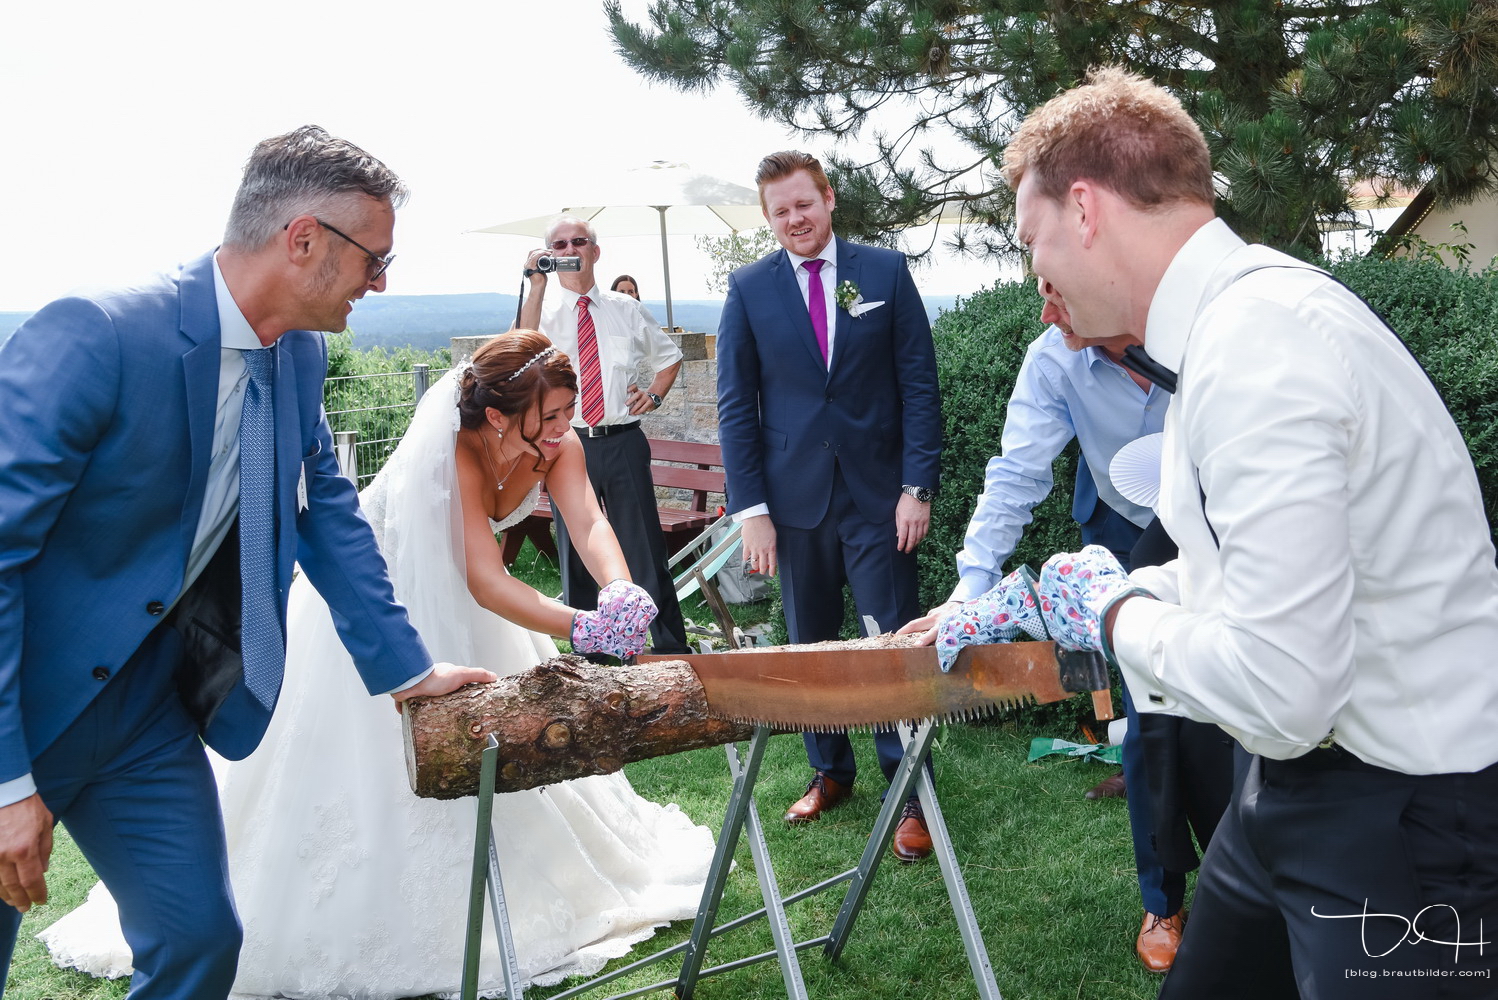 Auch vor den traditionellen Aufgaben wurde das Brautpaar nicht verschont. Der Hochzeitsfotograf macht die Fotos.